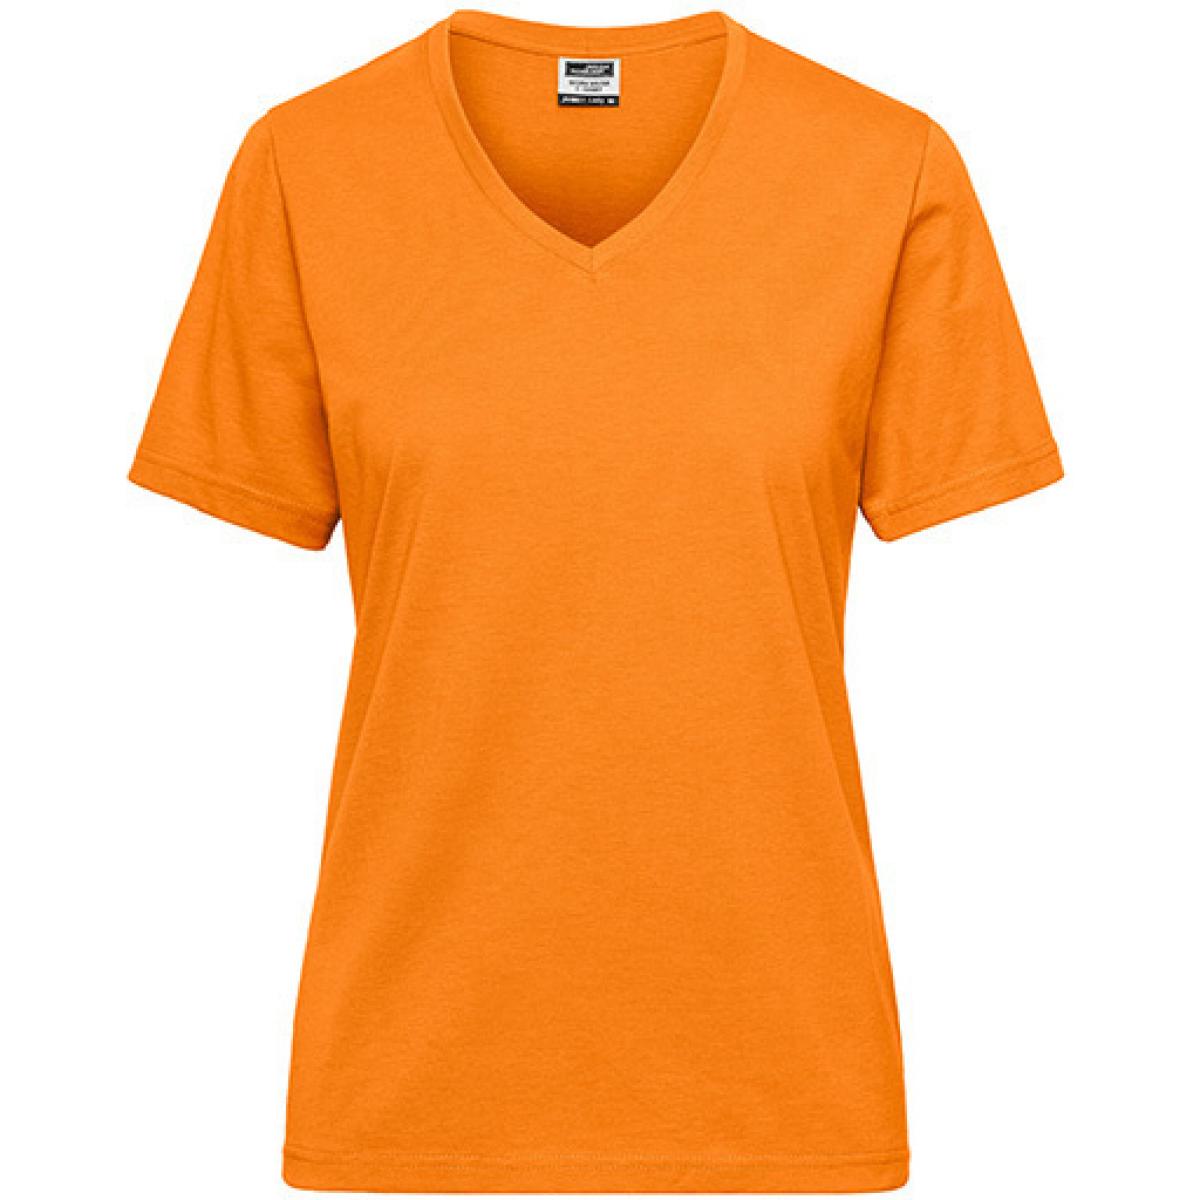 Hersteller: James+Nicholson Herstellernummer: JN1807 Artikelbezeichnung: Ladies‘ BIO Workwear T-Shirt / Damen T-Shirt - Waschbar 60C Farbe: Orange